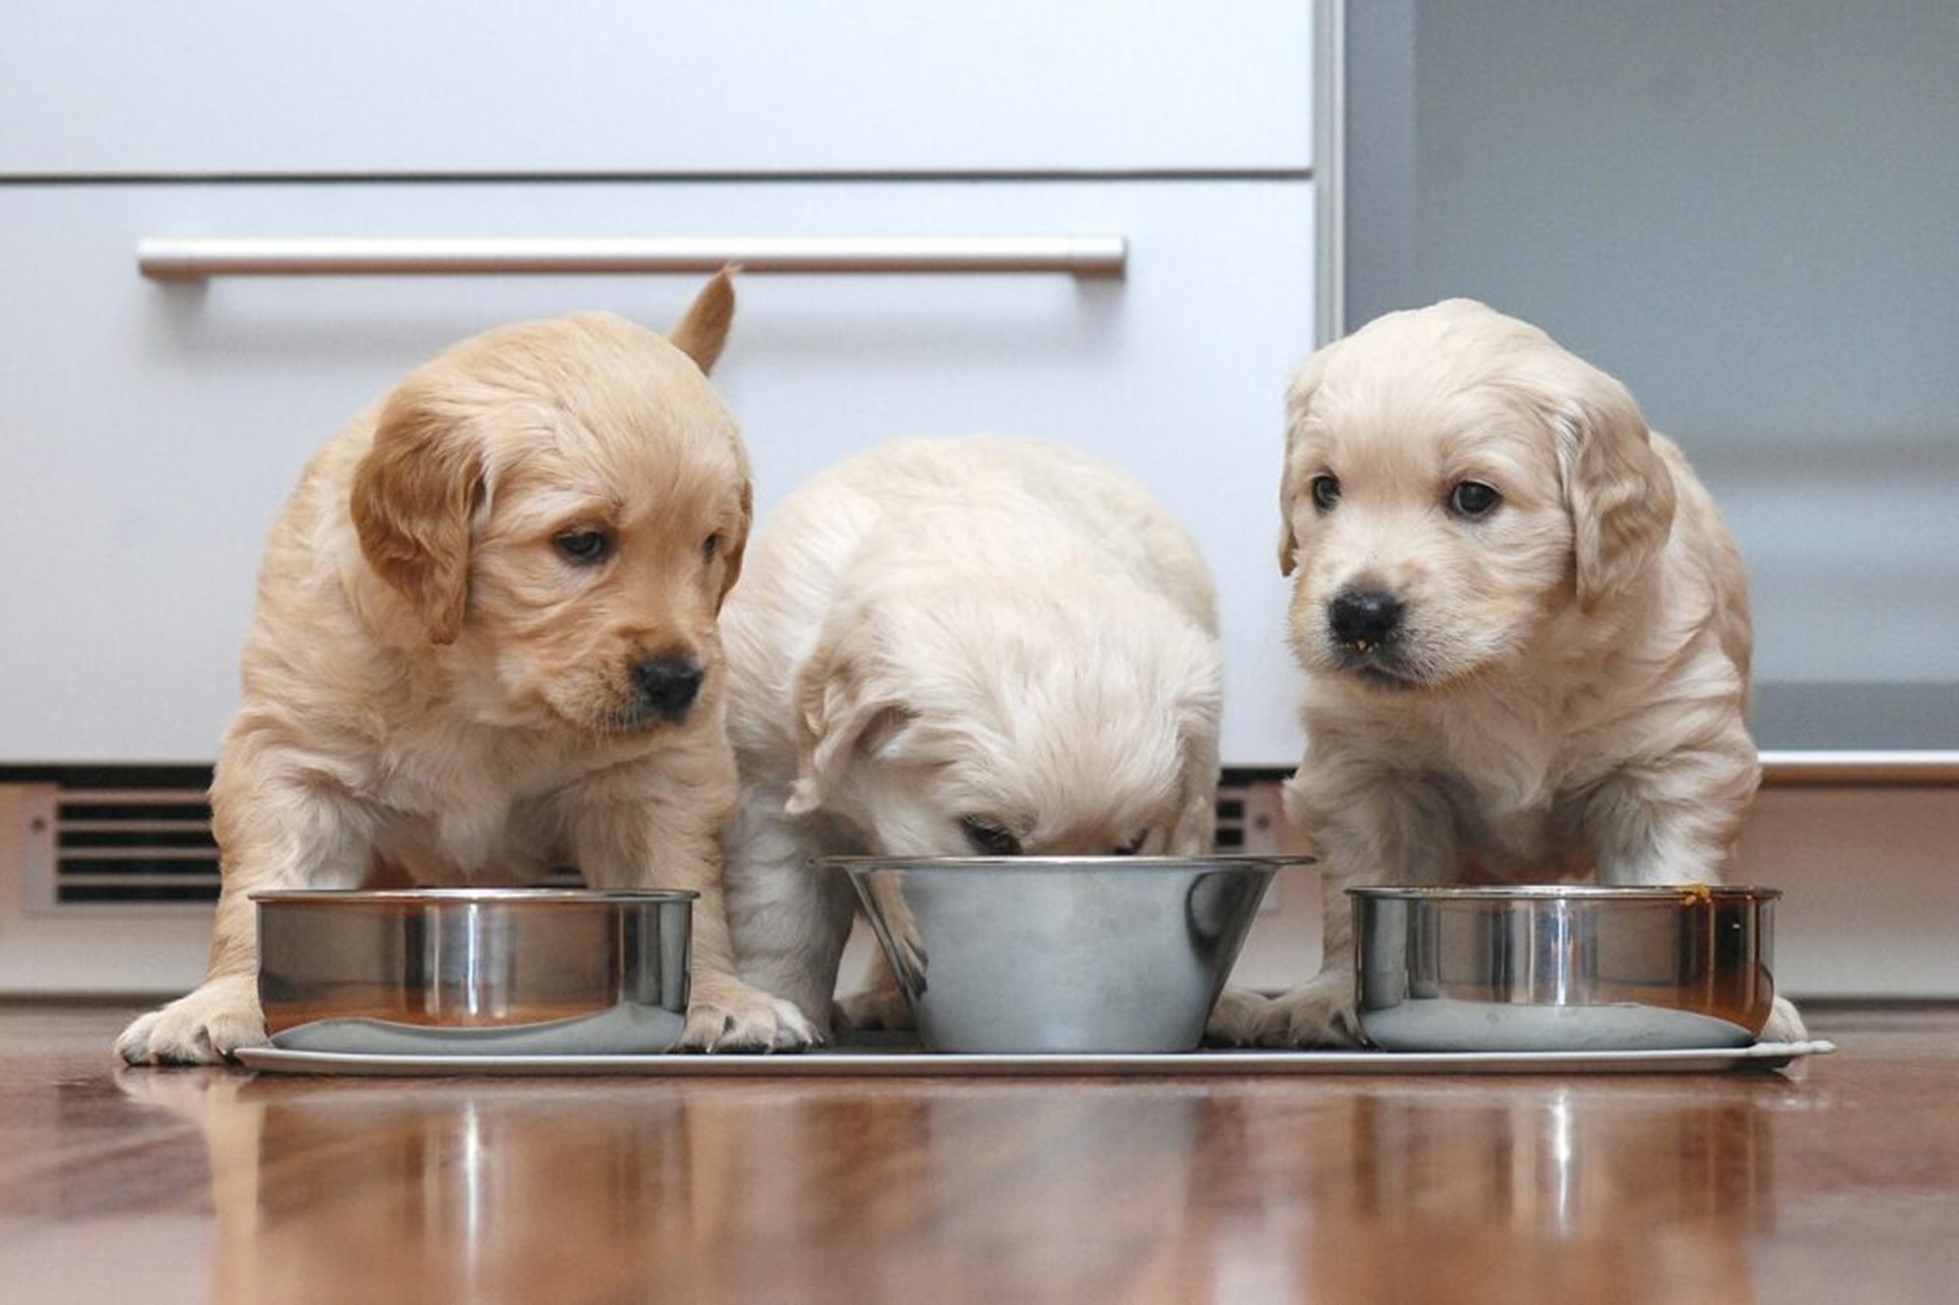 cuccioli di cane mangiano dalle ciotole